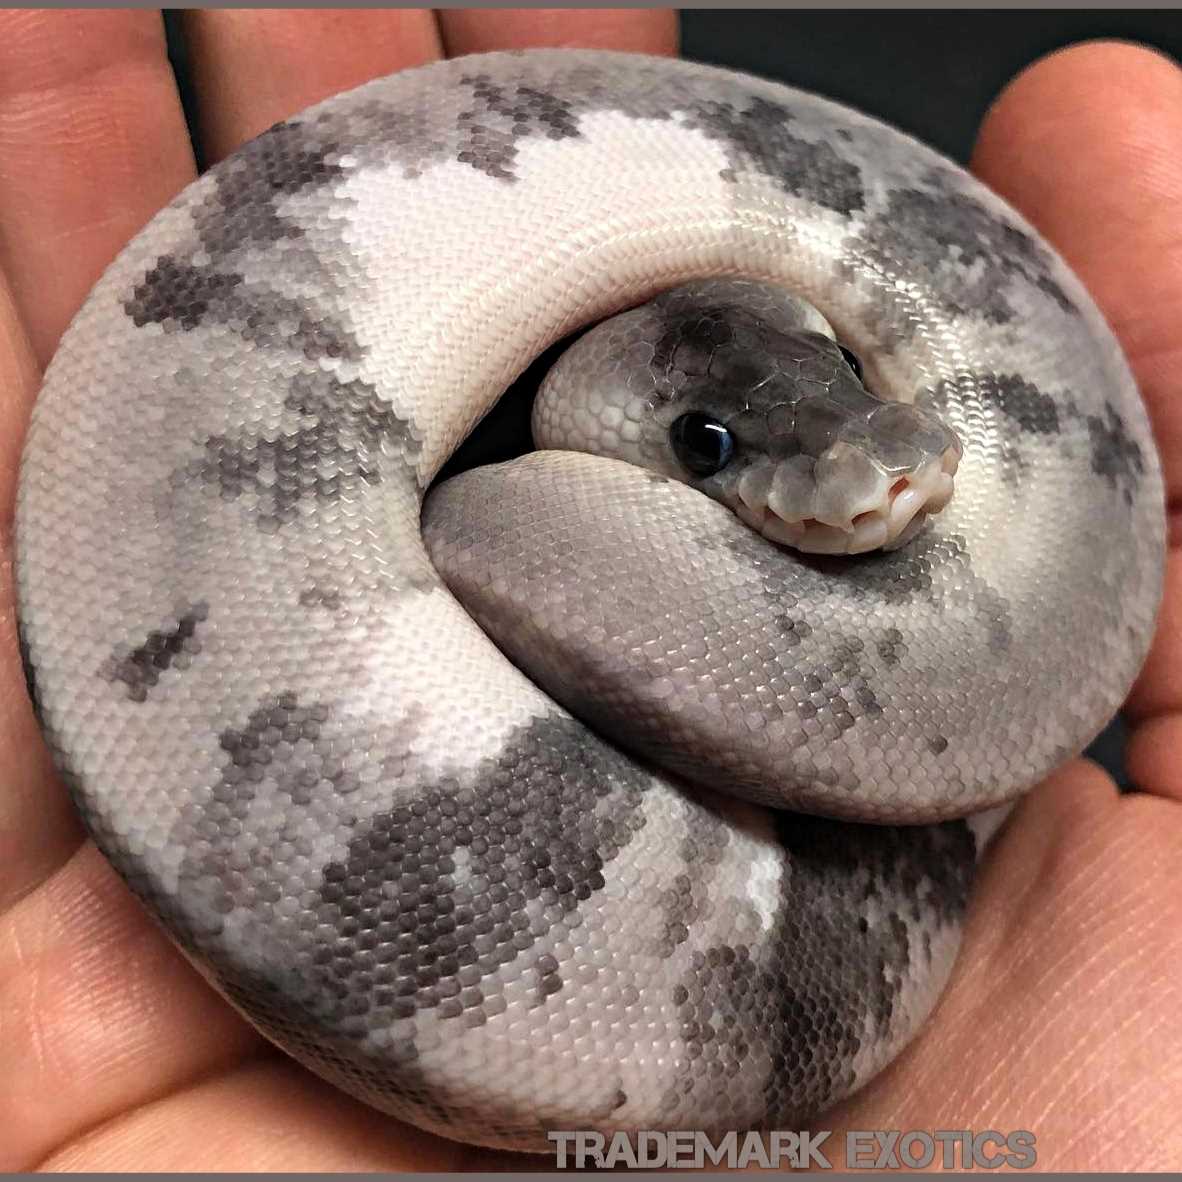 Urban camo ball python